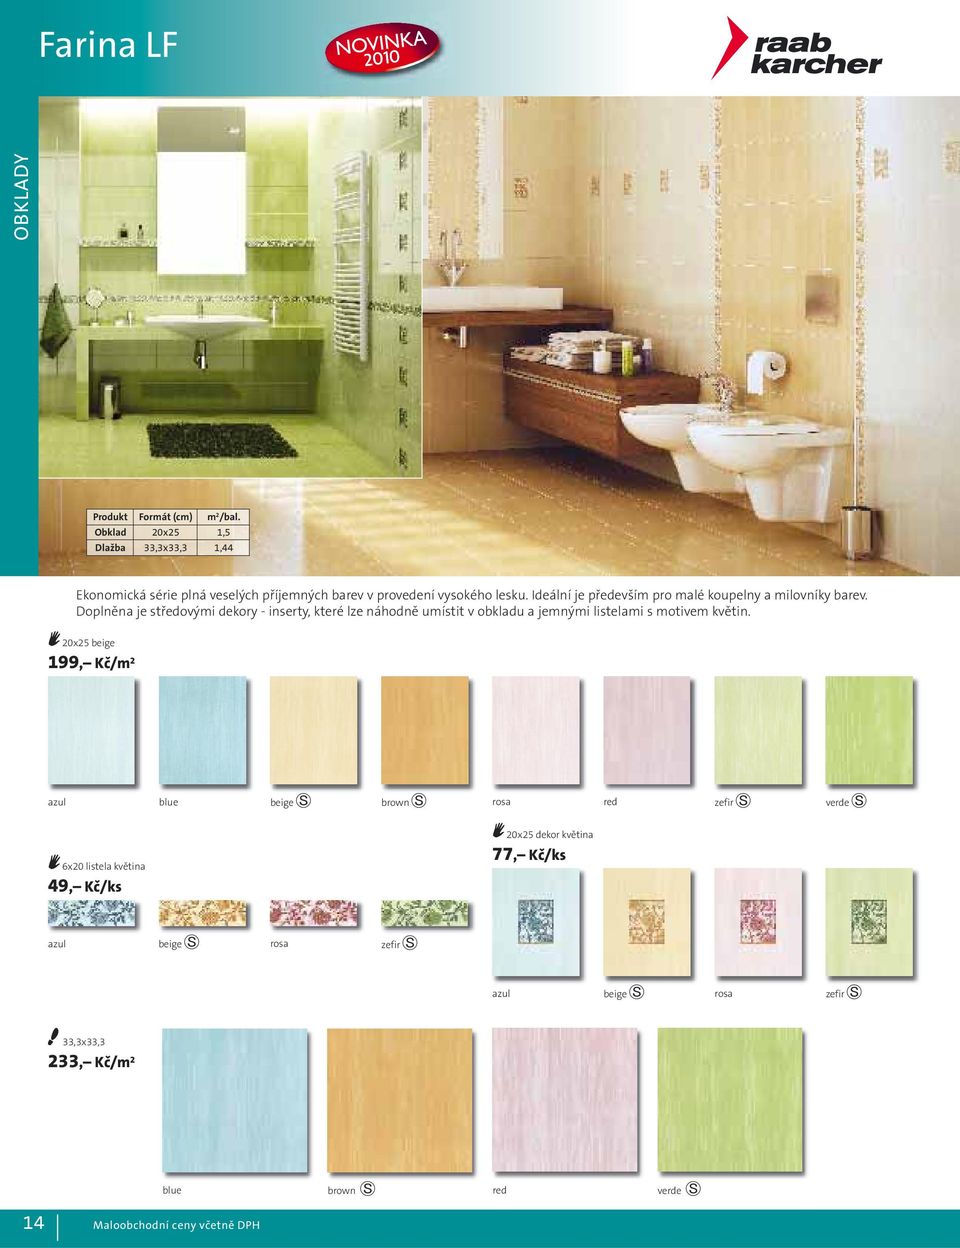 Ideální je především pro malé koupelny a milovníky barev.